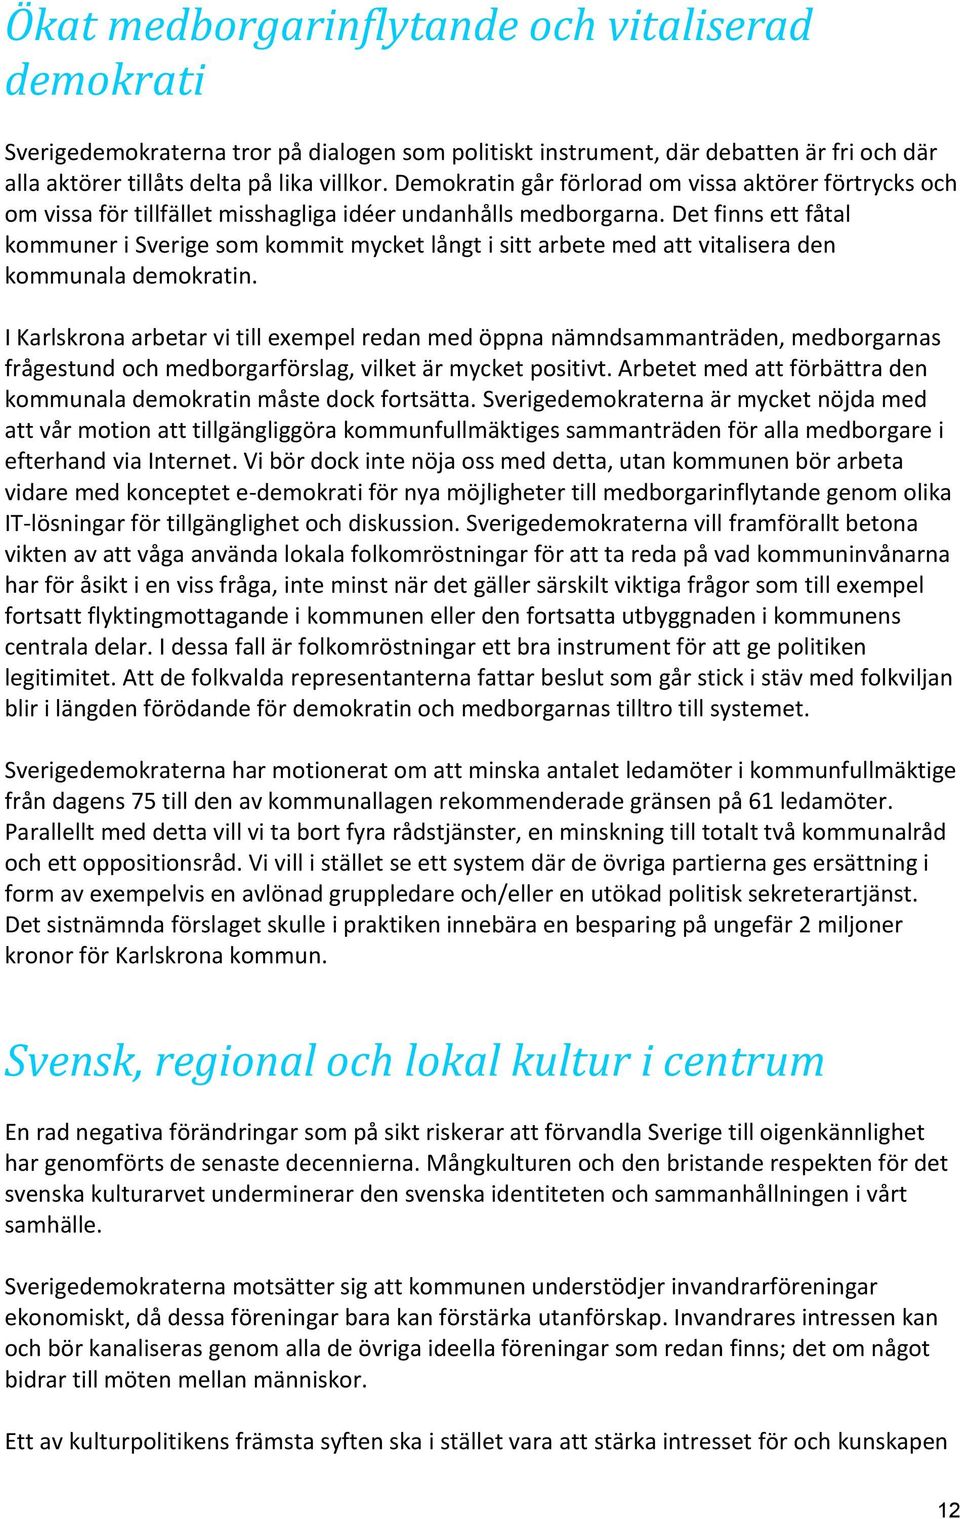 Det finns ett fåtal kommuner i Sverige som kommit mycket långt i sitt arbete med att vitalisera den kommunala demokratin.